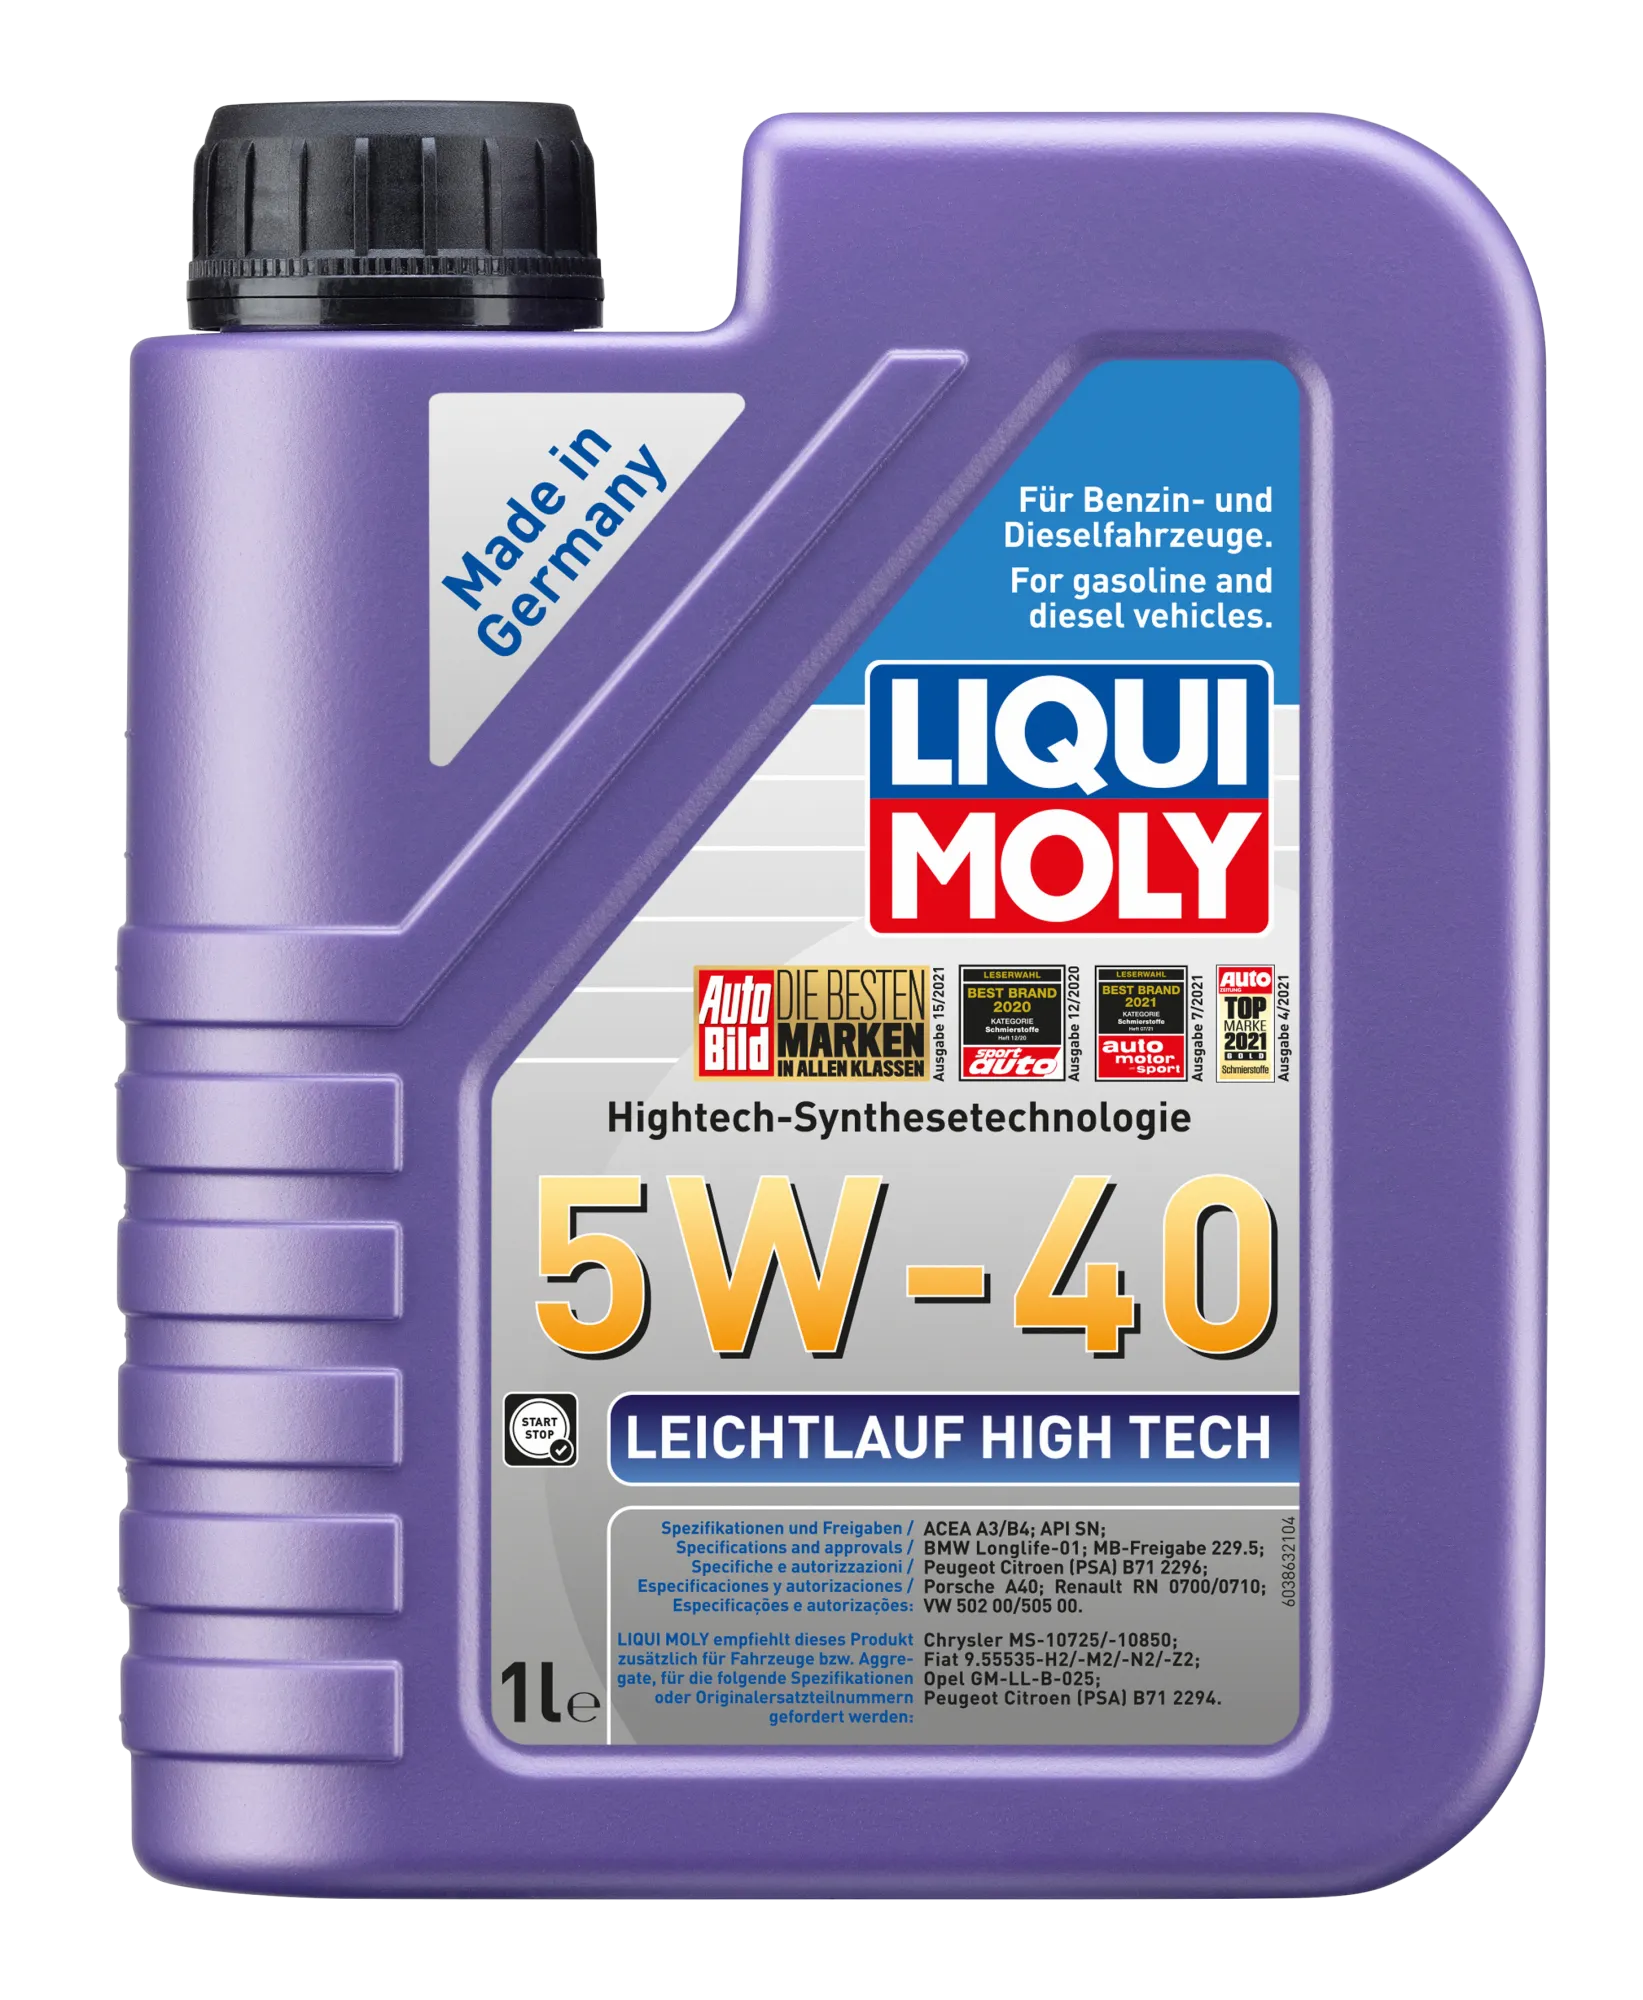 Liqui Moly 5W40 Leichtlauf High Tech Motorolie 2327 (1L) Longlife01 A3/B4 VW502.002/505.00 